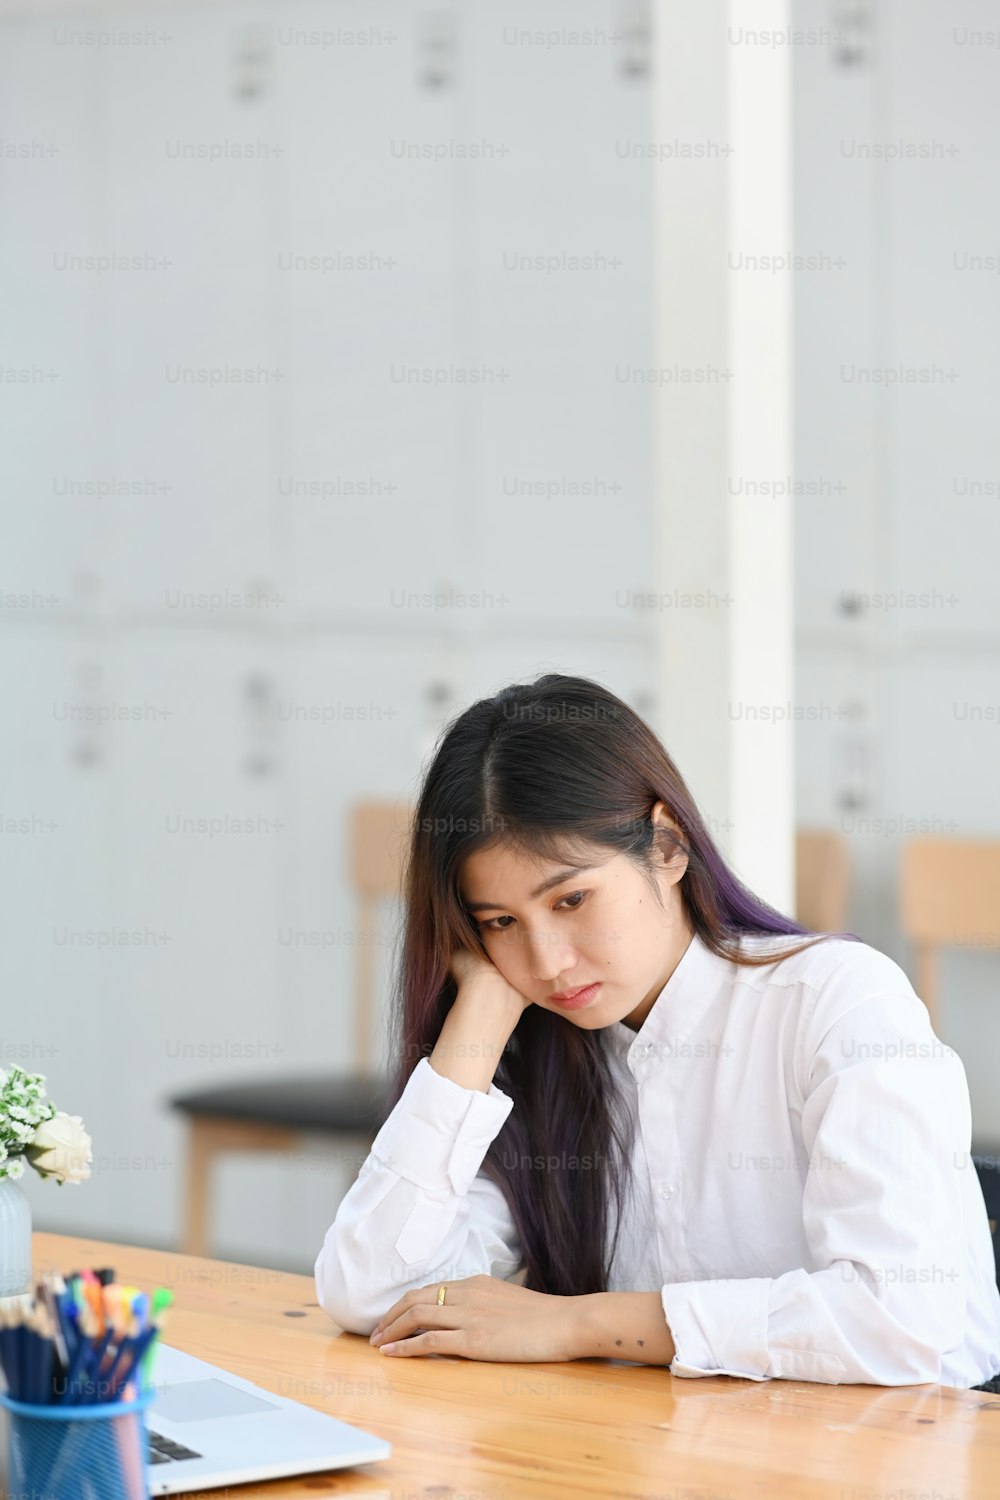 Oficinista joven aburrida sentada en su lugar de trabajo.